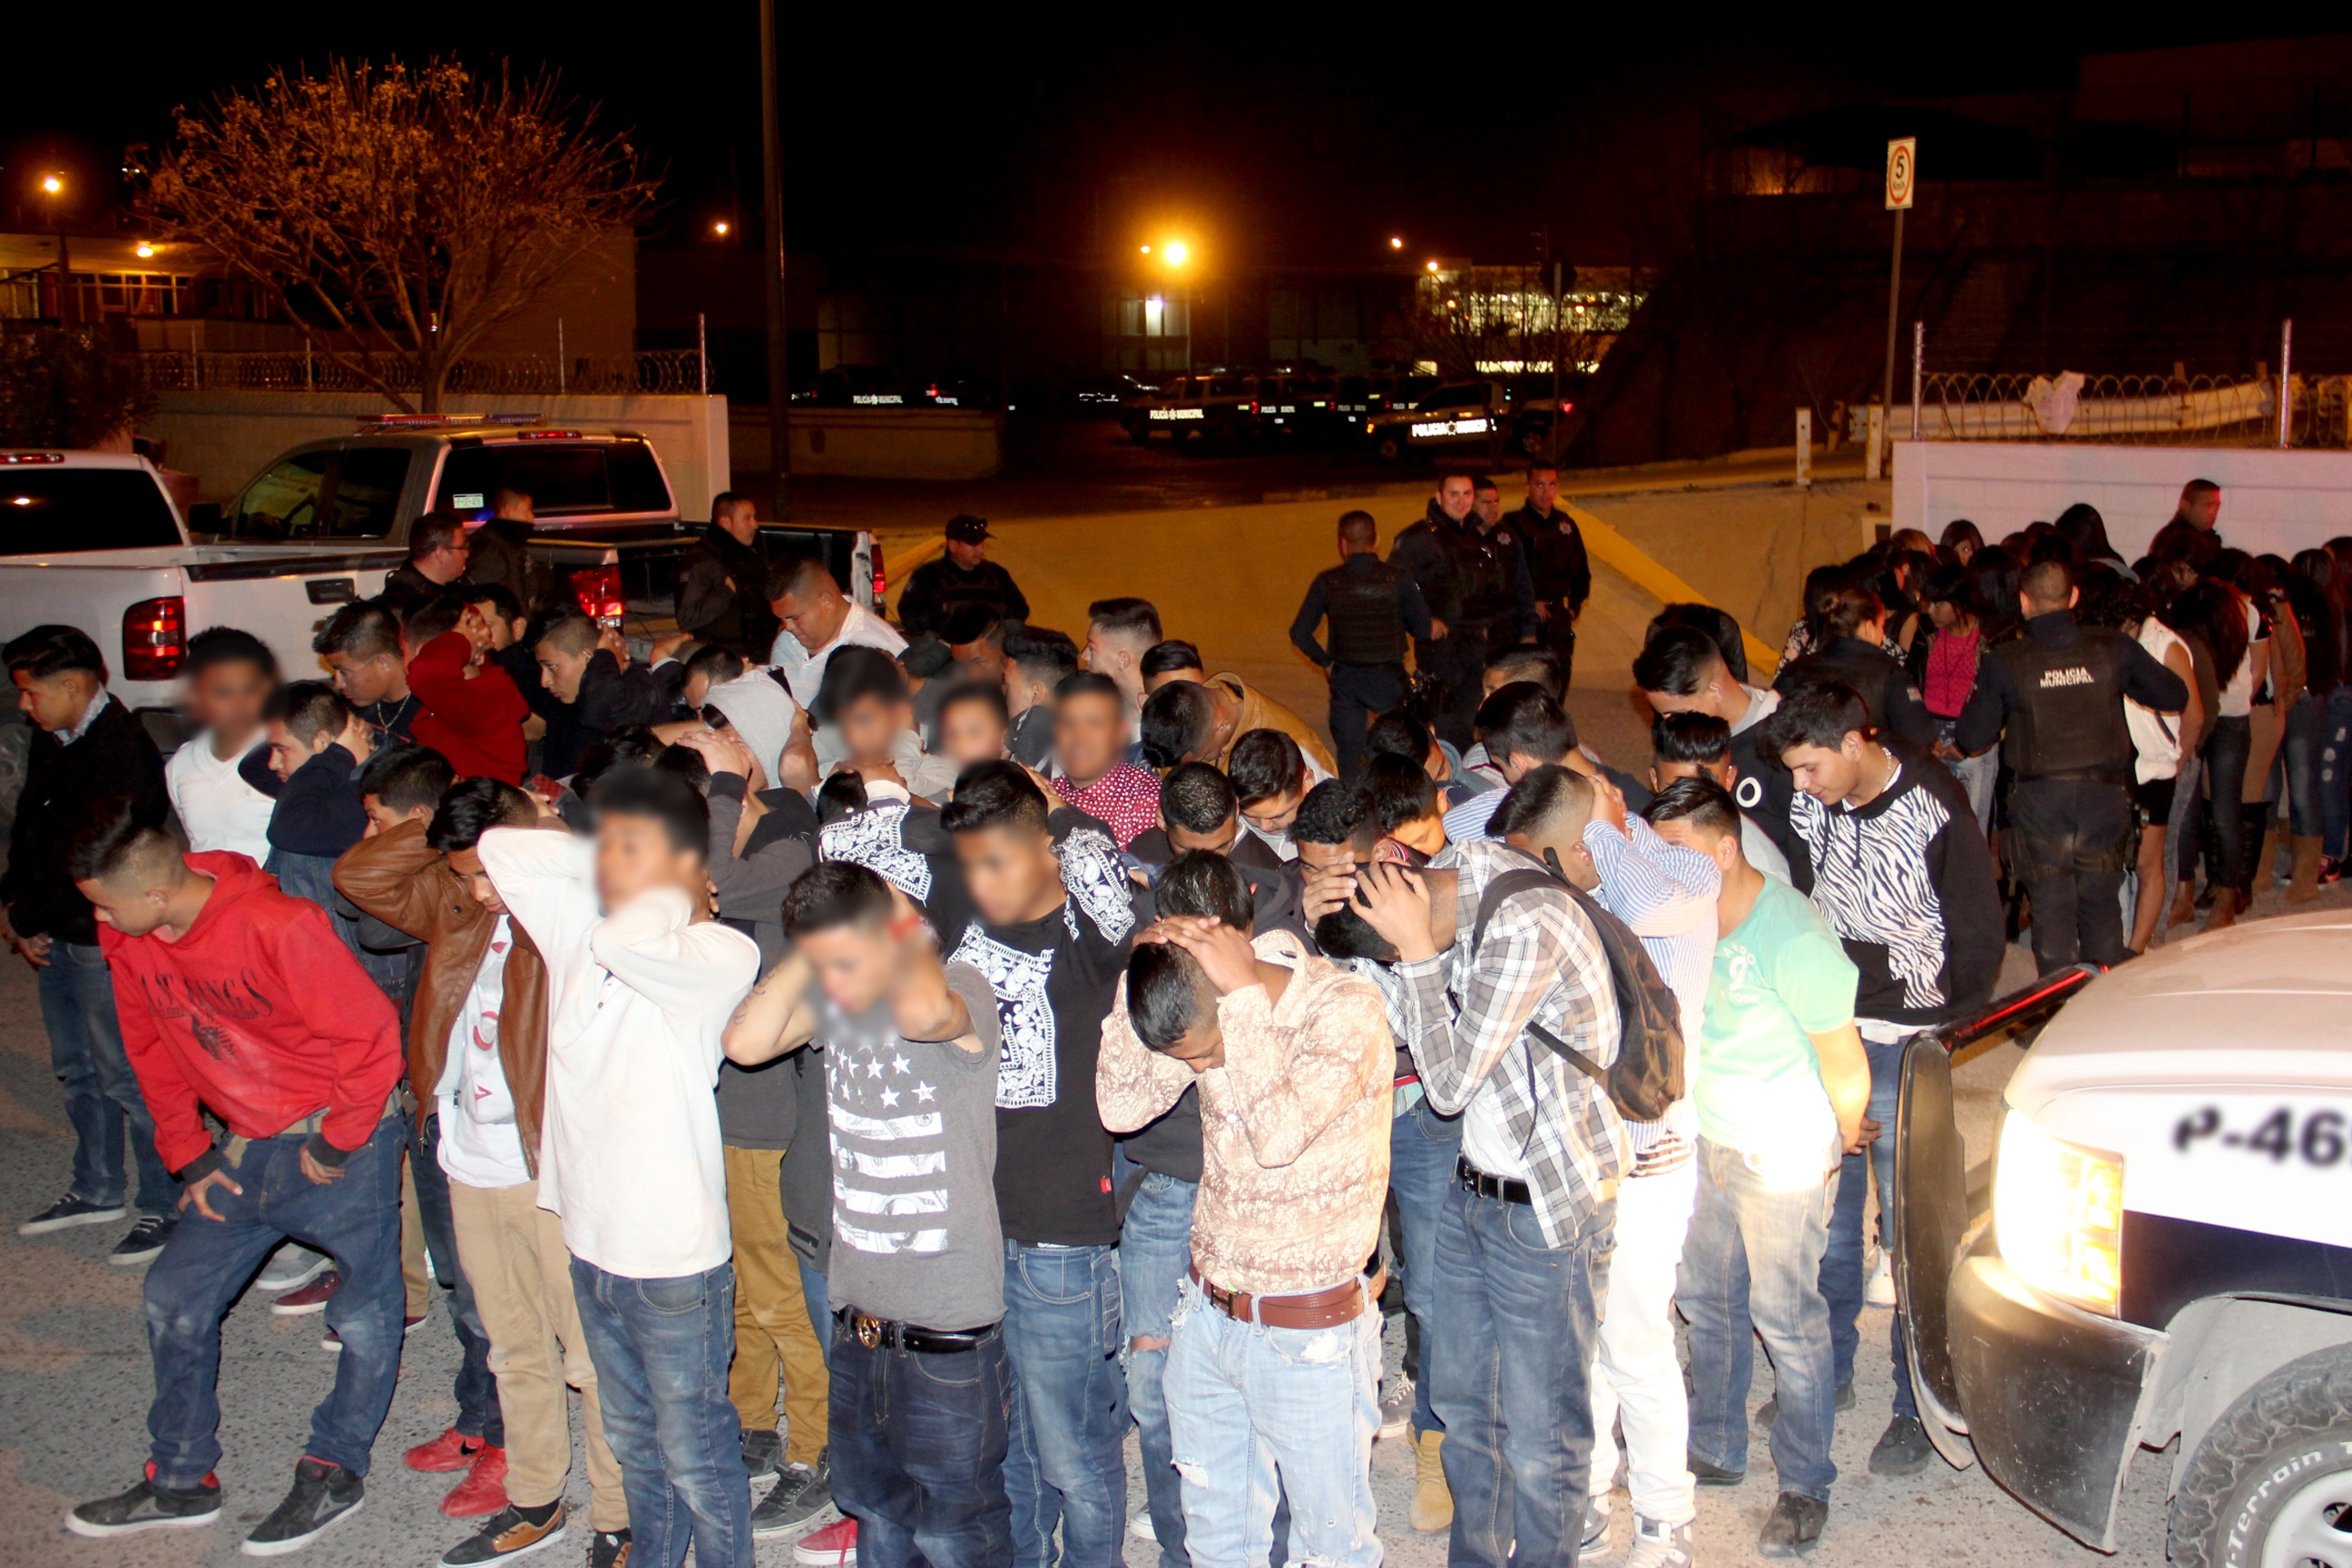  Arrestan a 400 jóvenes en Cd. Juárez por participar en fiesta donde se vendía alcohol ilegalmente